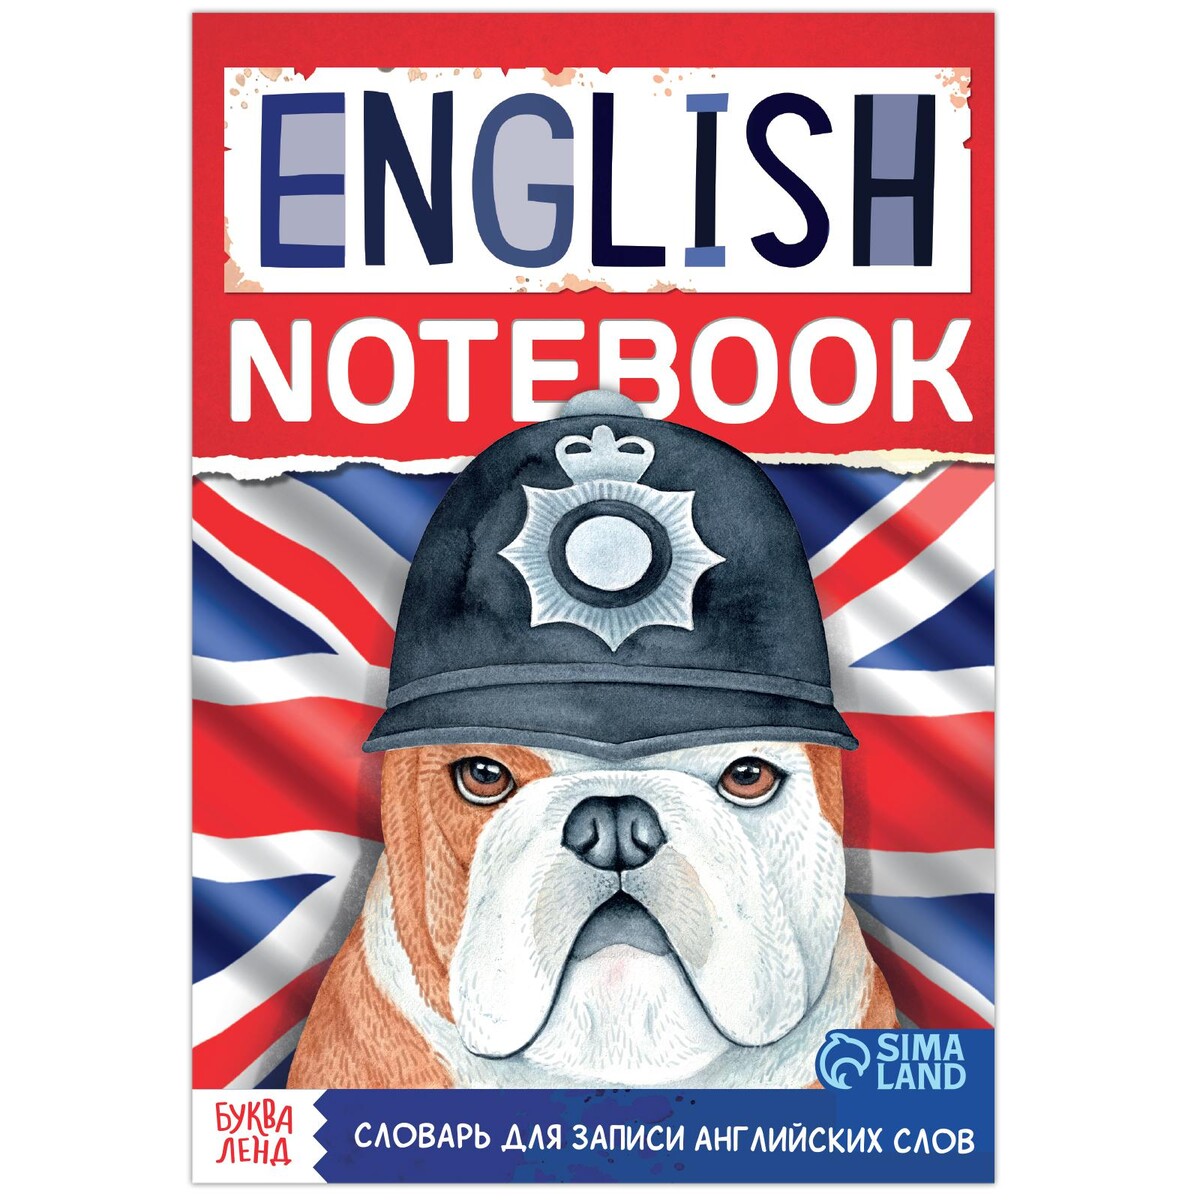 Словарь для записи английских слов english notebook.